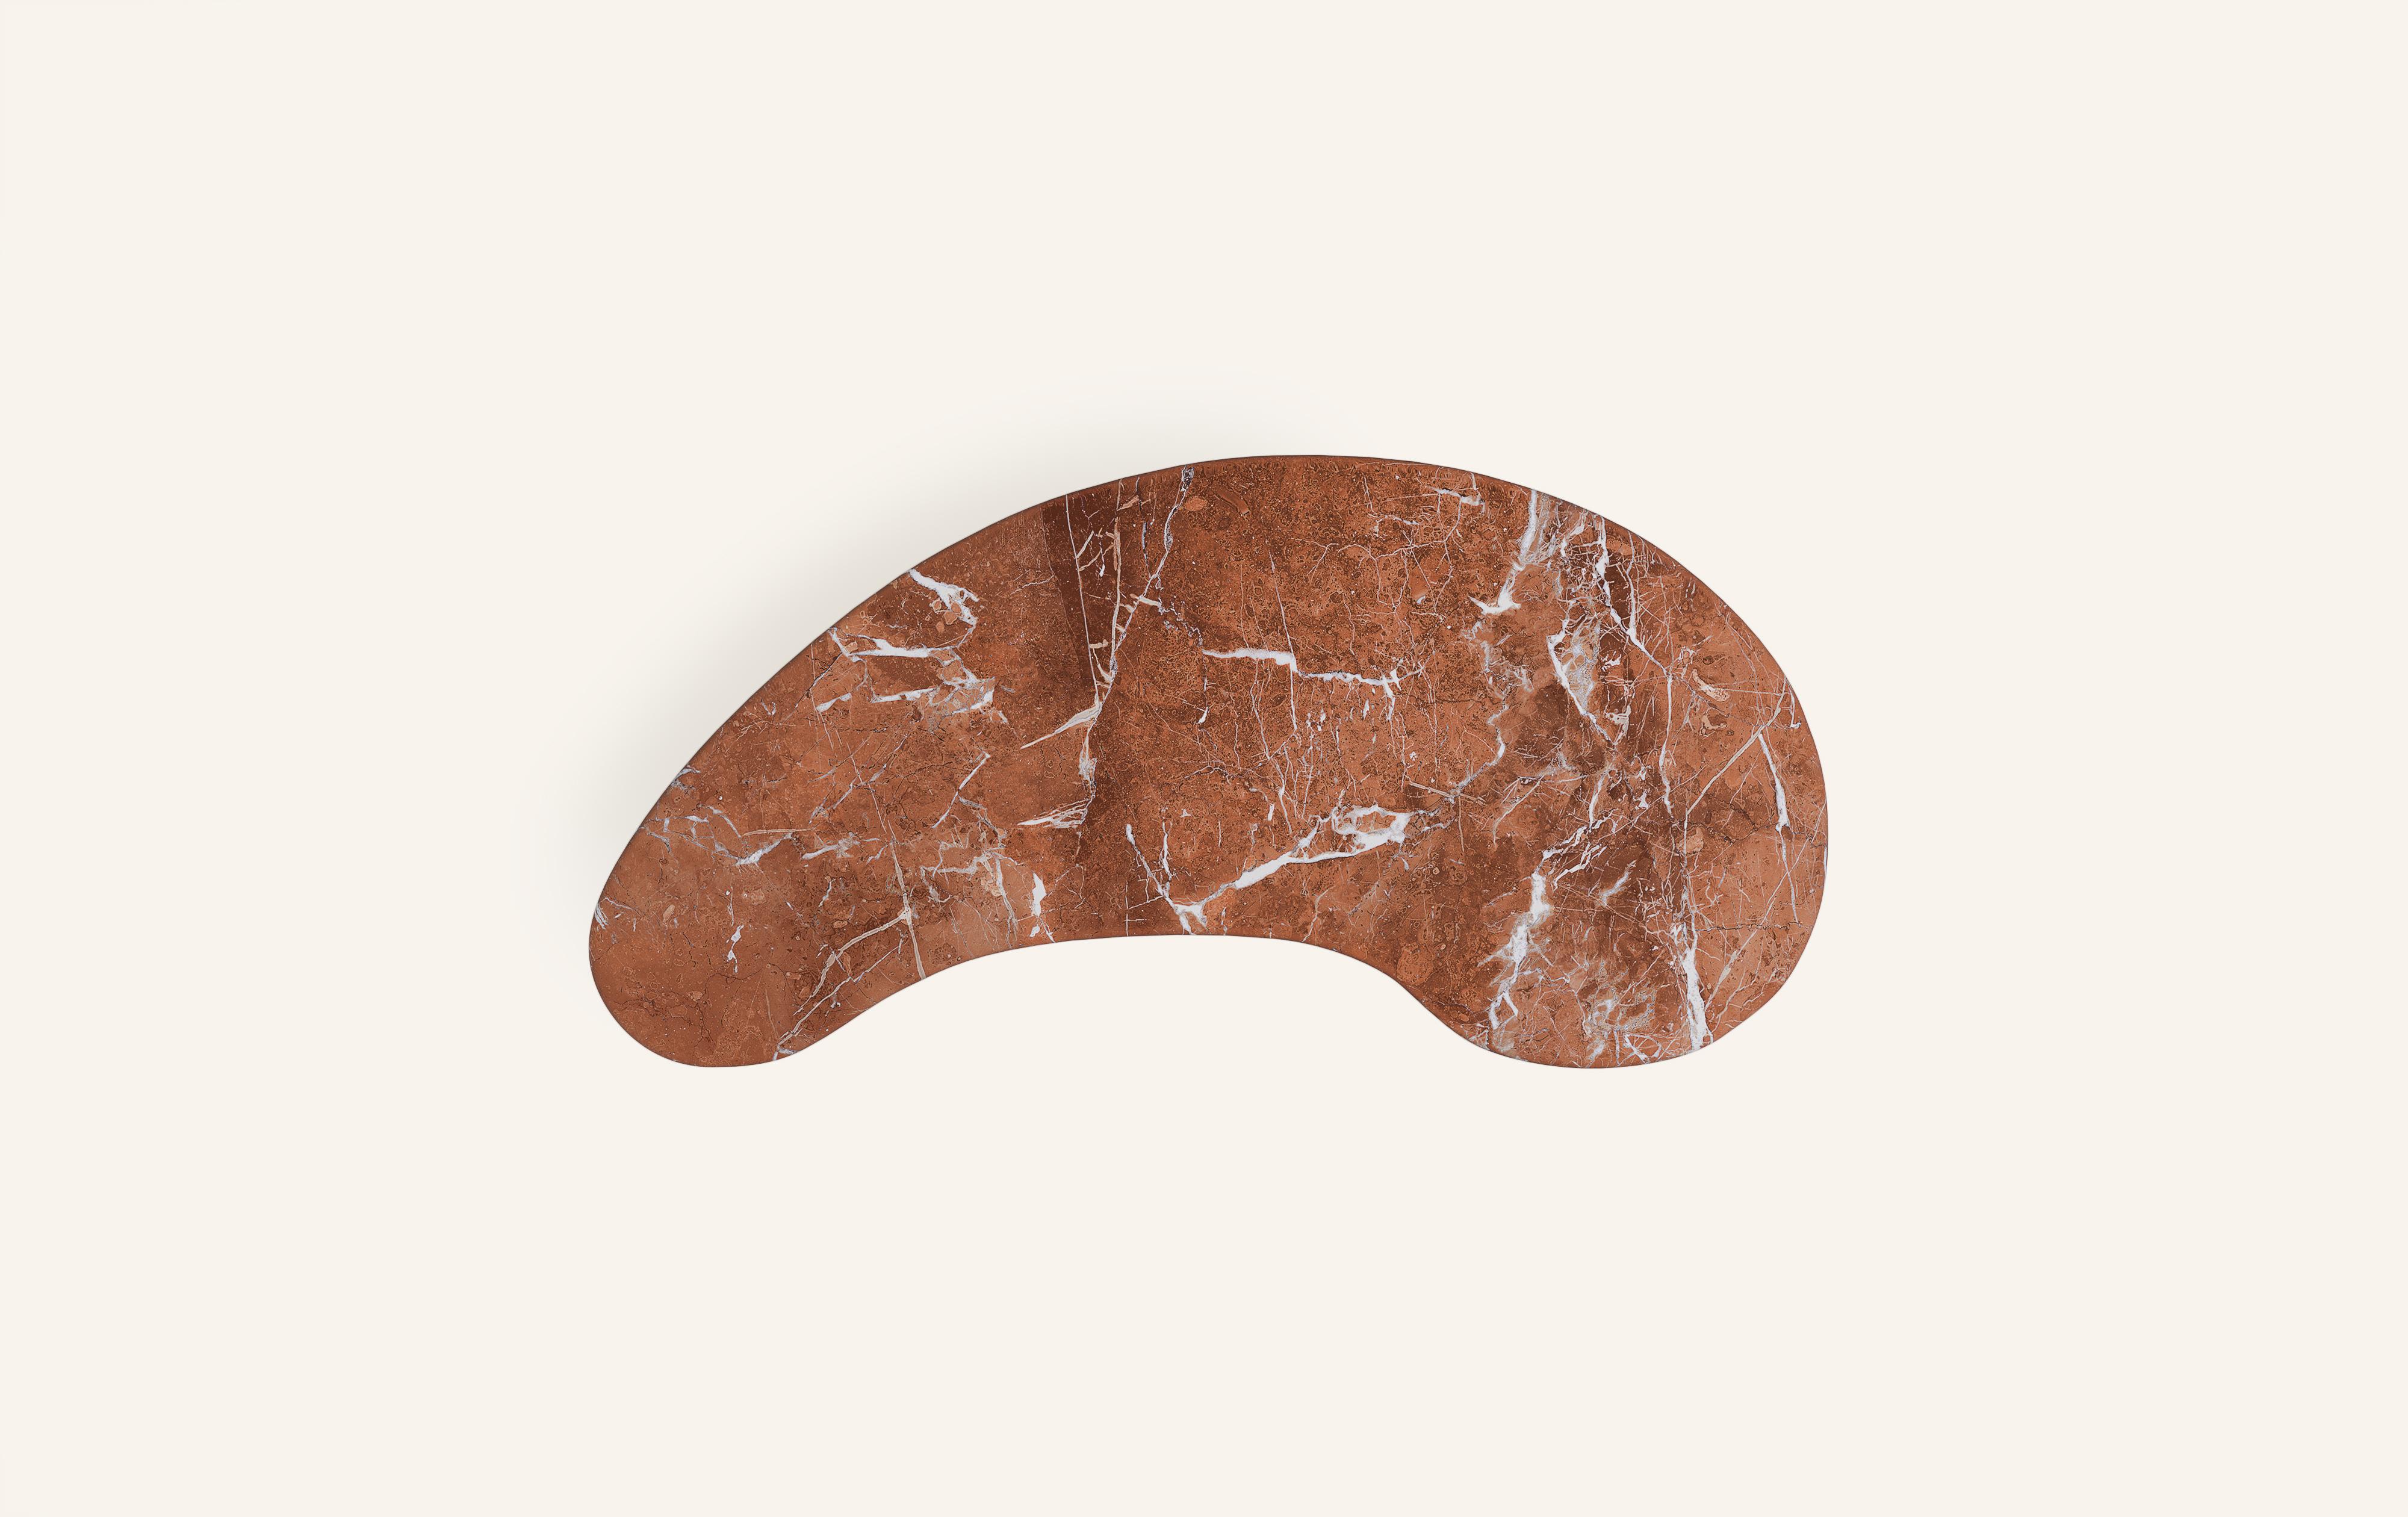 FORM(LA) Lago Freeform Desk 72”L x 36”W x 28”H Rojo Alicante Marble In New Condition For Sale In Los Angeles, CA